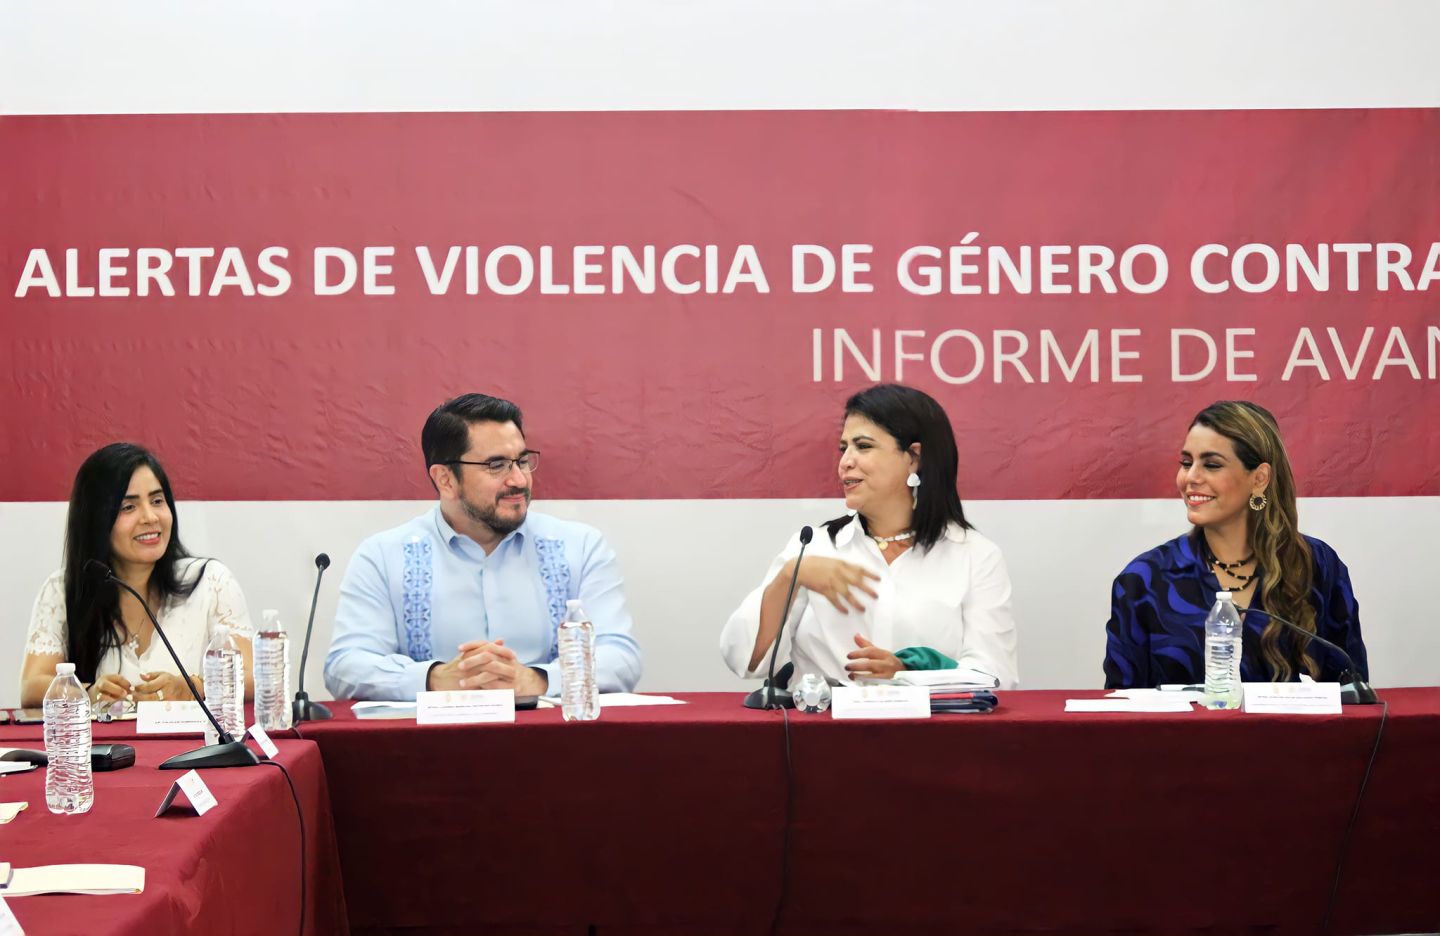 Representa Yoloczin Domínguez al Congreso de Guerrero en el Informe de Avances de las Alertas de Violencia de Género Contra las Mujeres en Guerrero